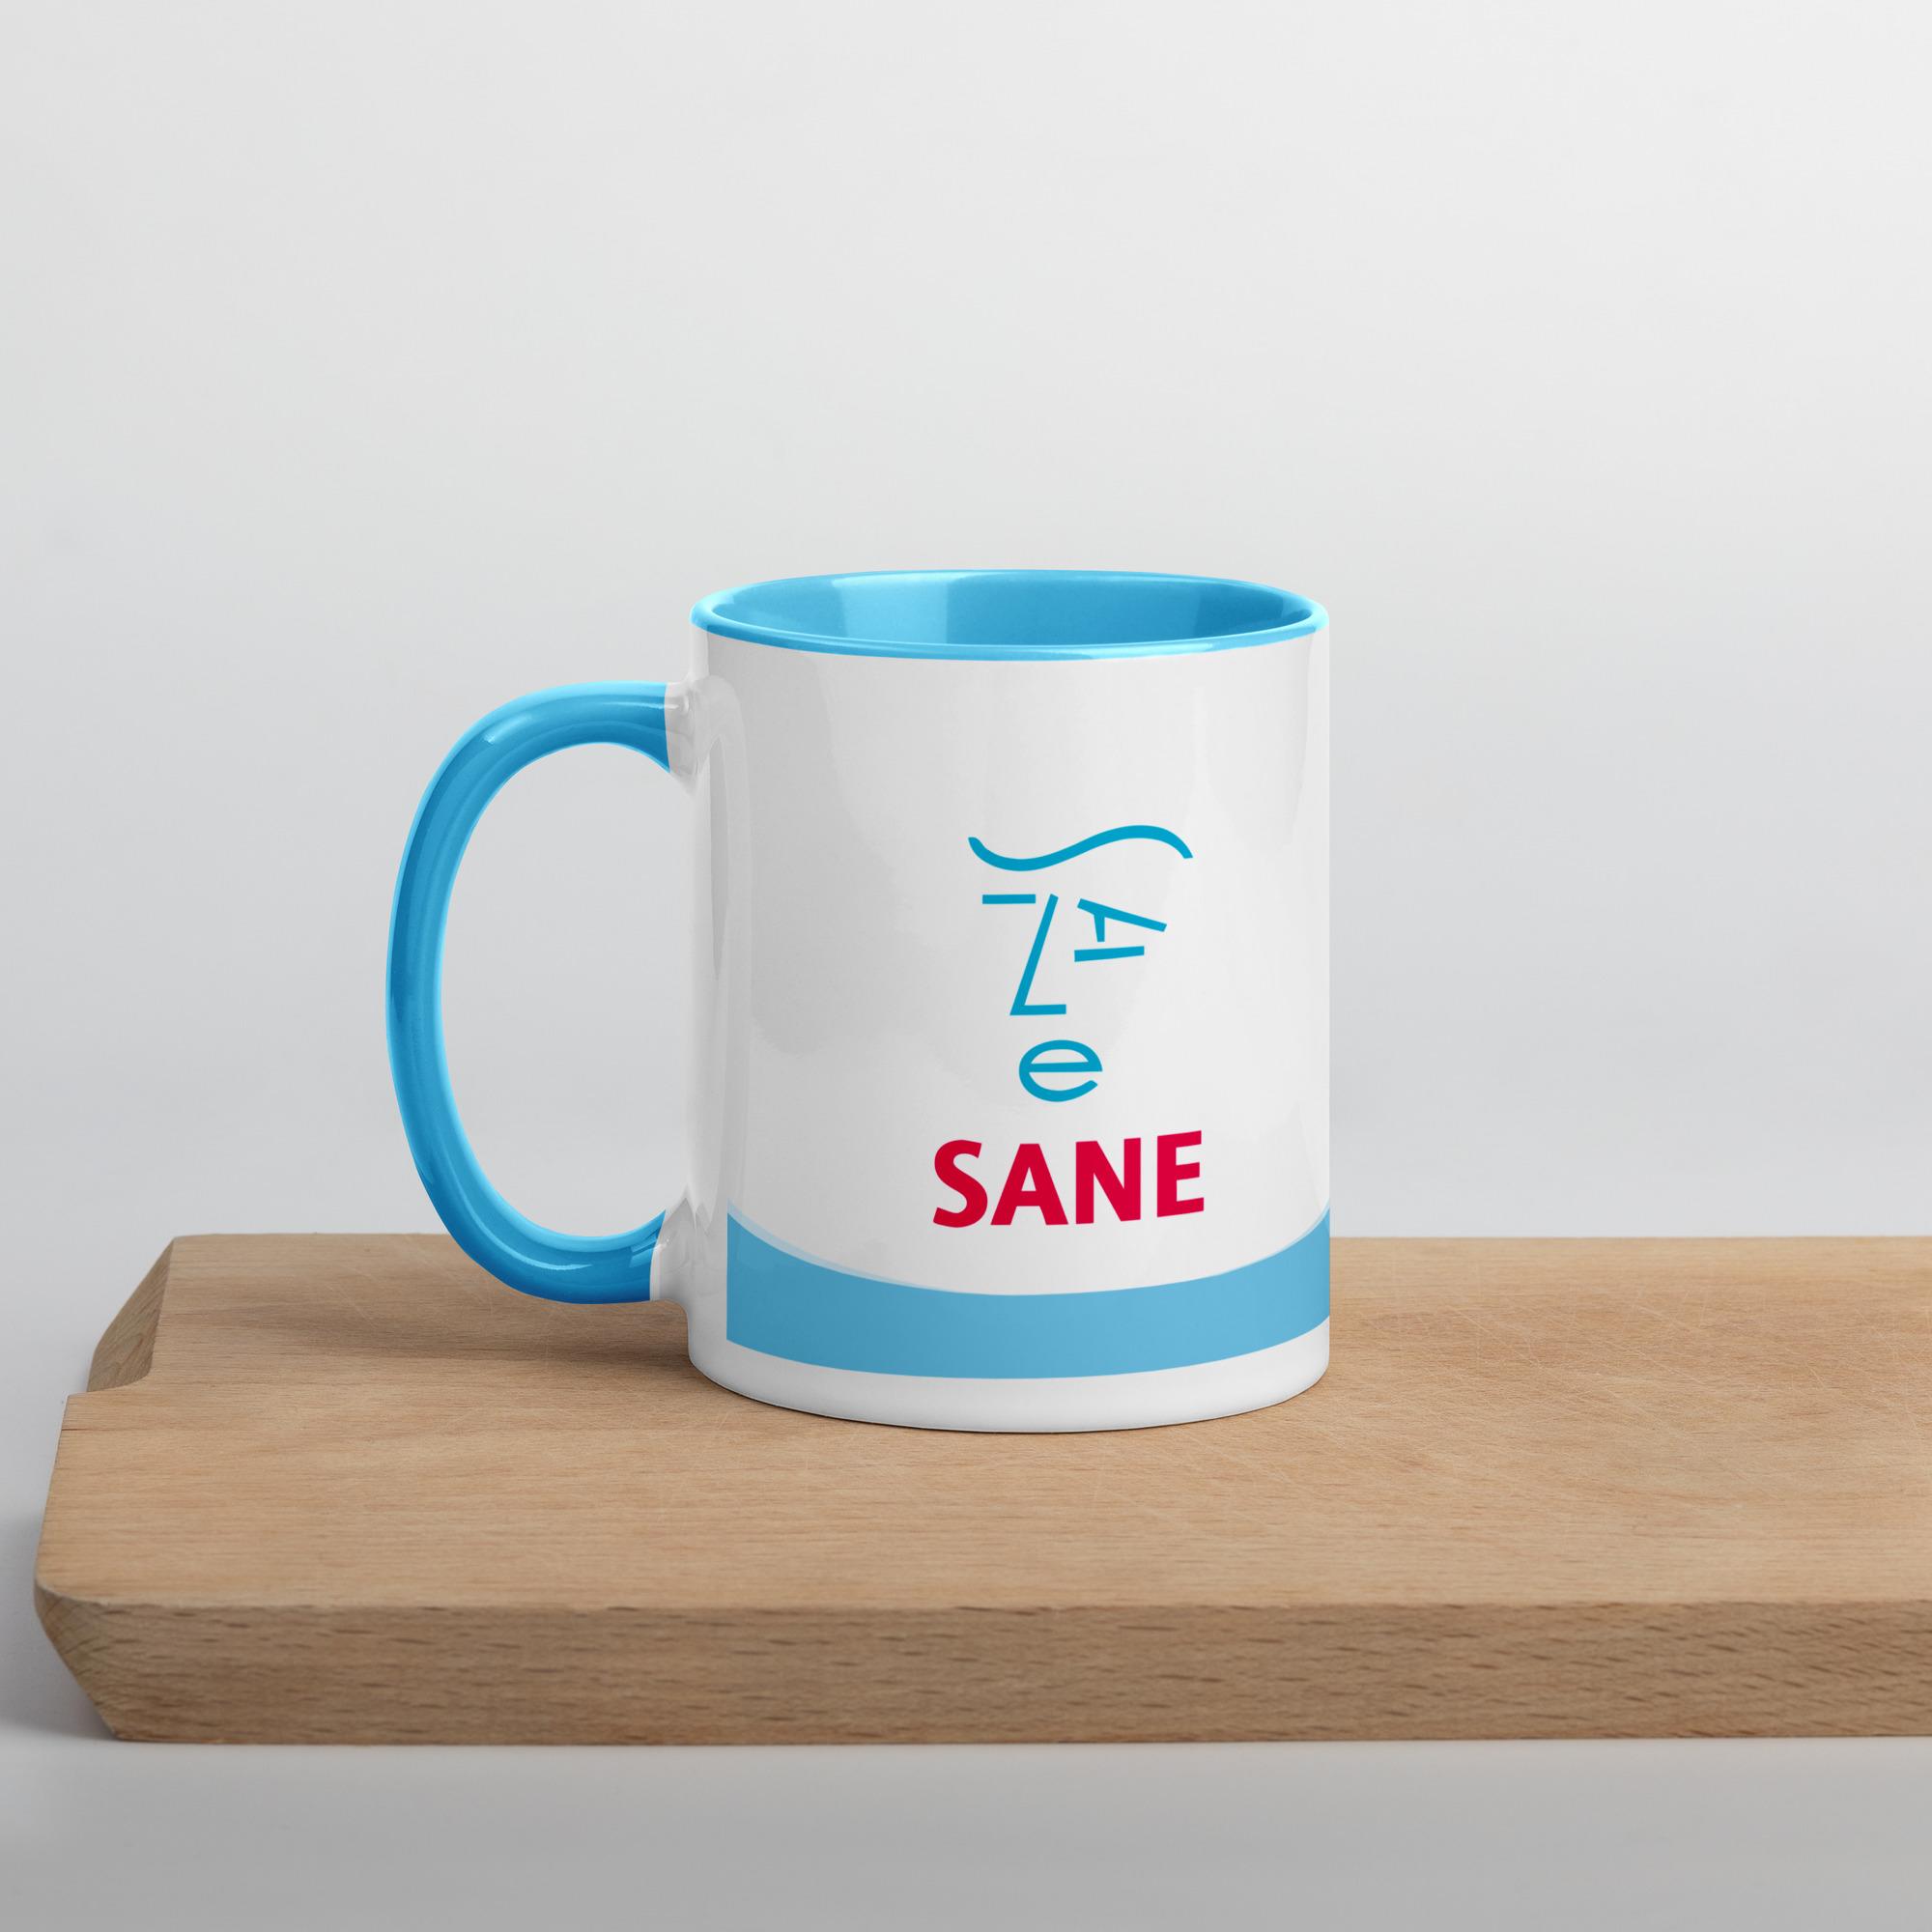 SANE mug